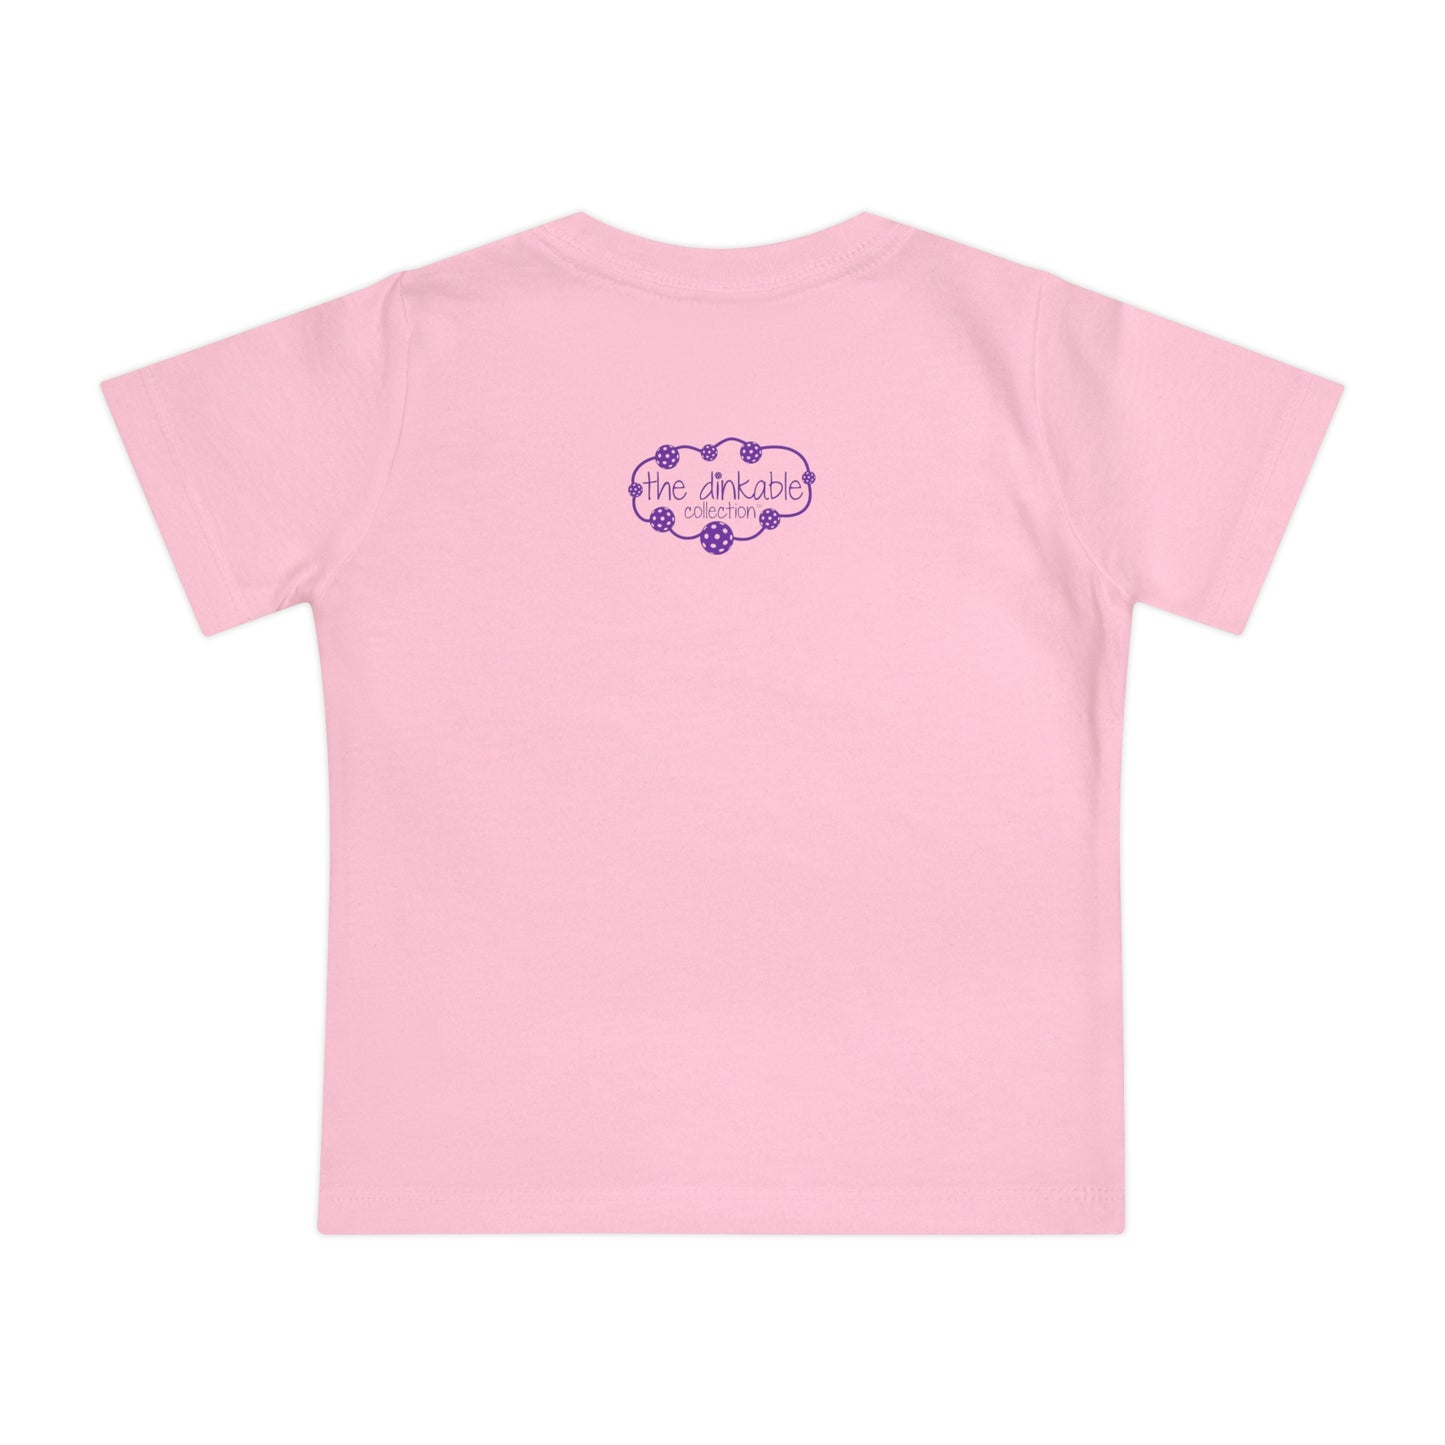 Pickleball Baby Short Sleeve T-Shirt - Daddy's little dinker